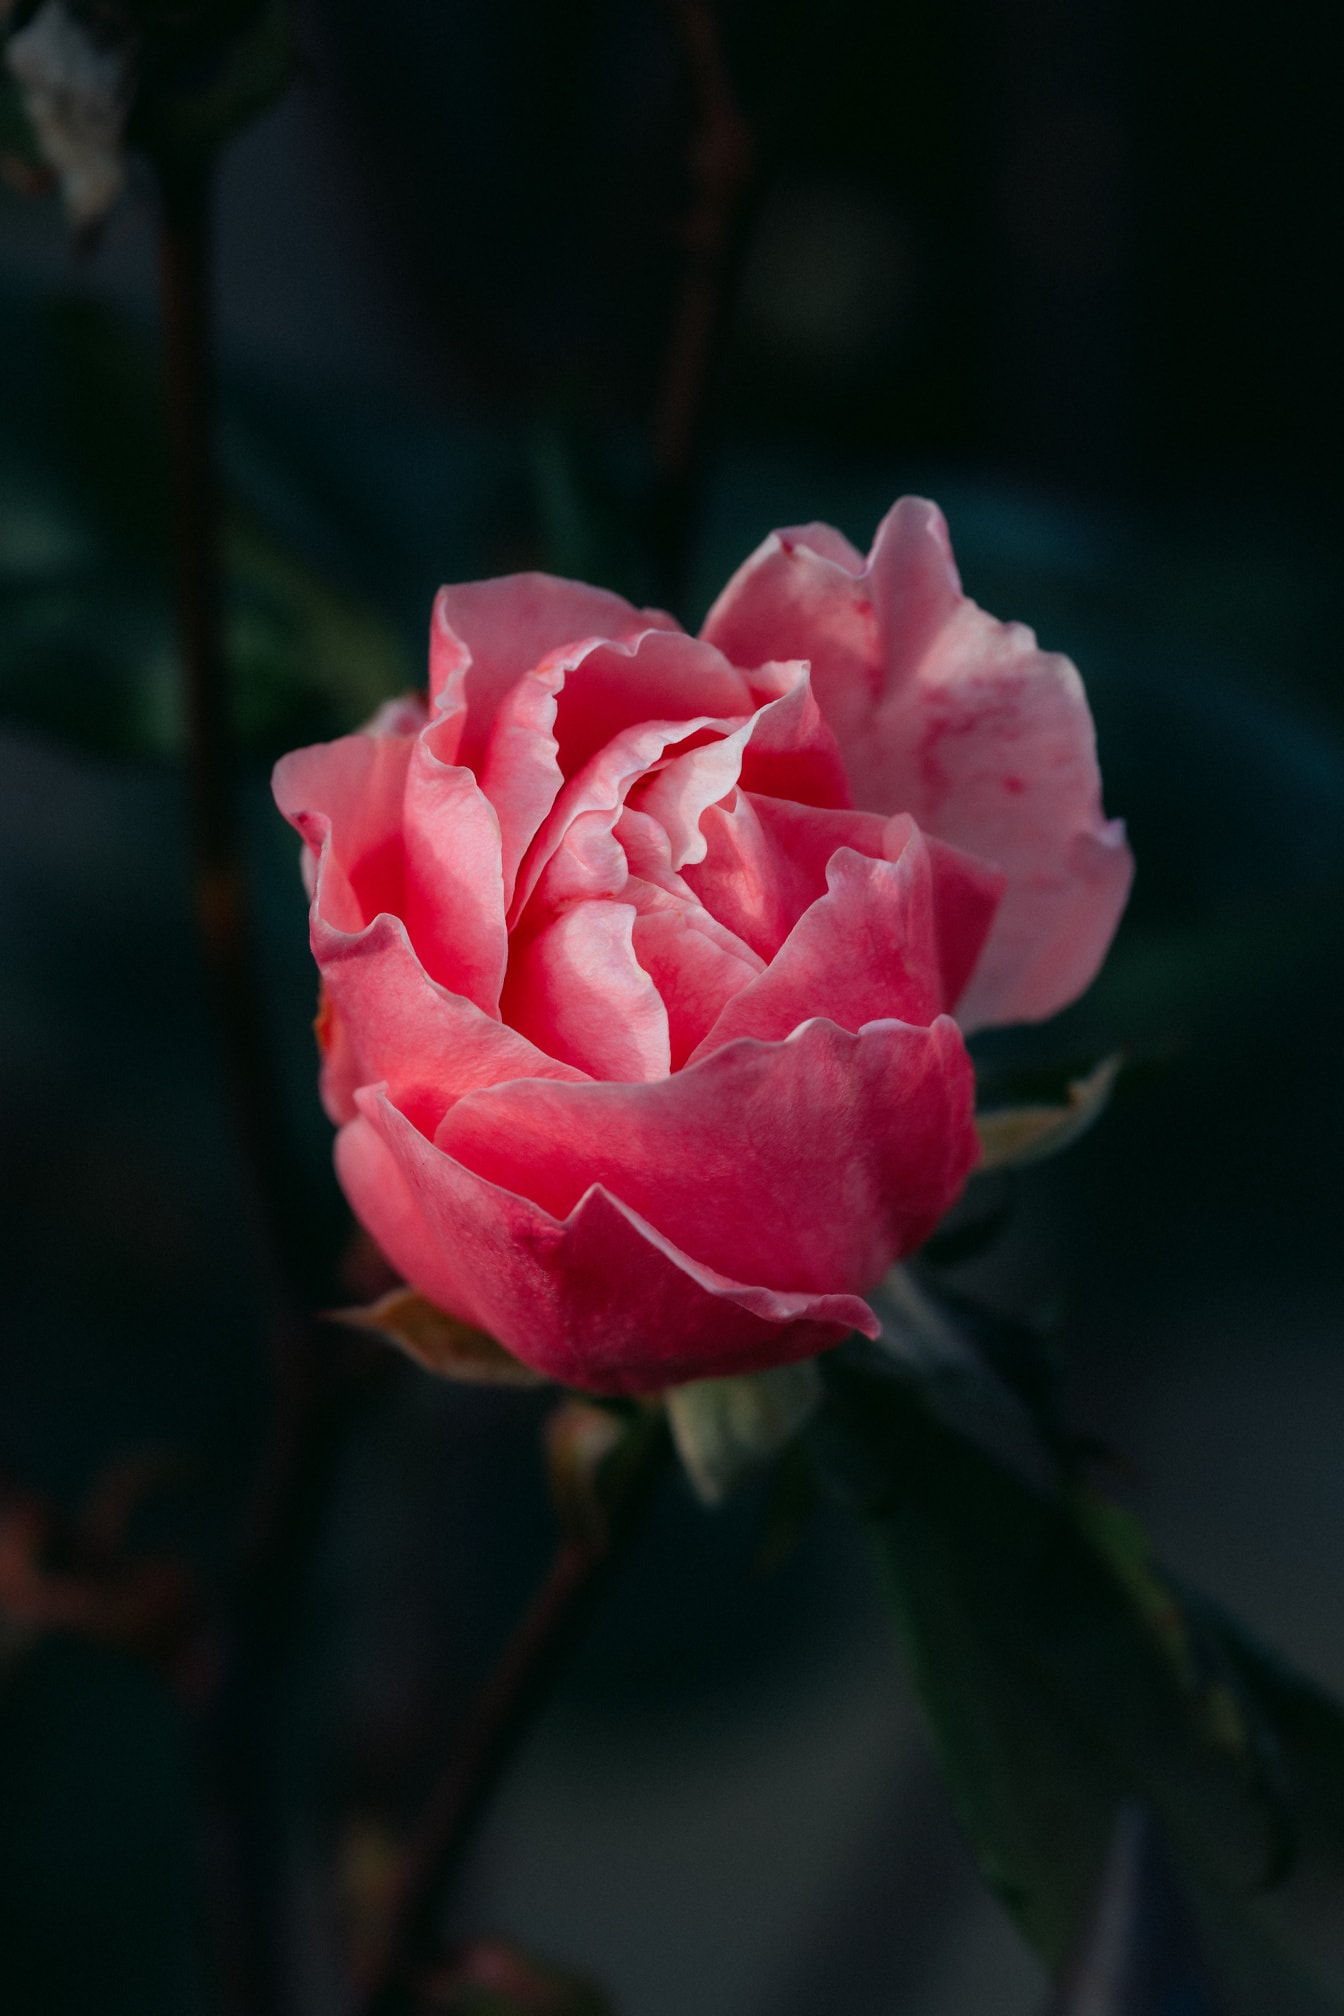 Một bông hoa hồng màu hồng tuyệt đẹp với những cánh hoa nhẹ nhàng